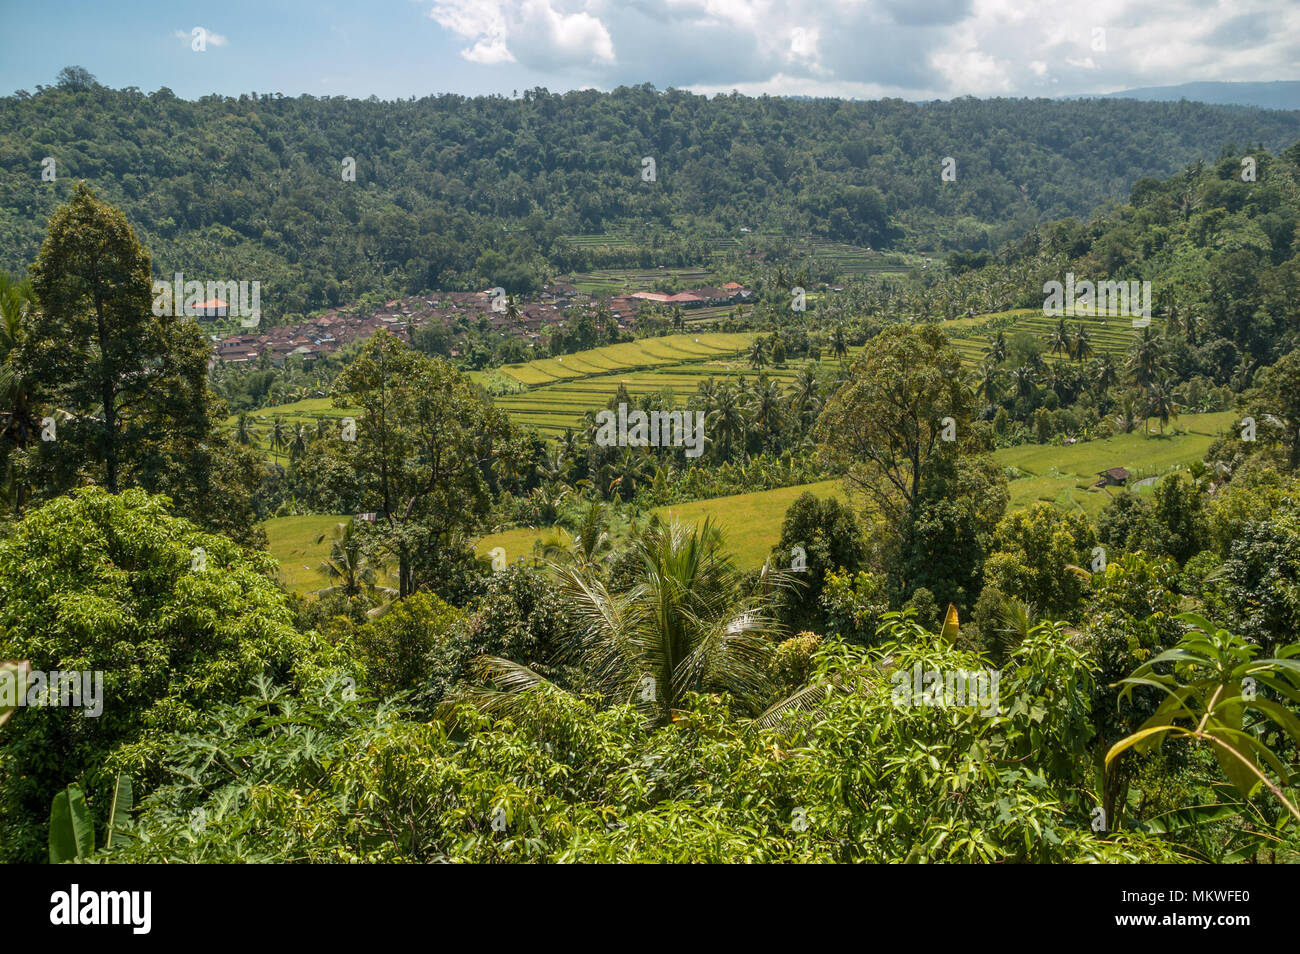 Umgeben von dichten Dschungel Vegetation sind hell grünen Terrassen Reis und den braunen Dächer eines typischen balinesischen Dorf zu pflegen. Munduk, Indonesien Stockfoto